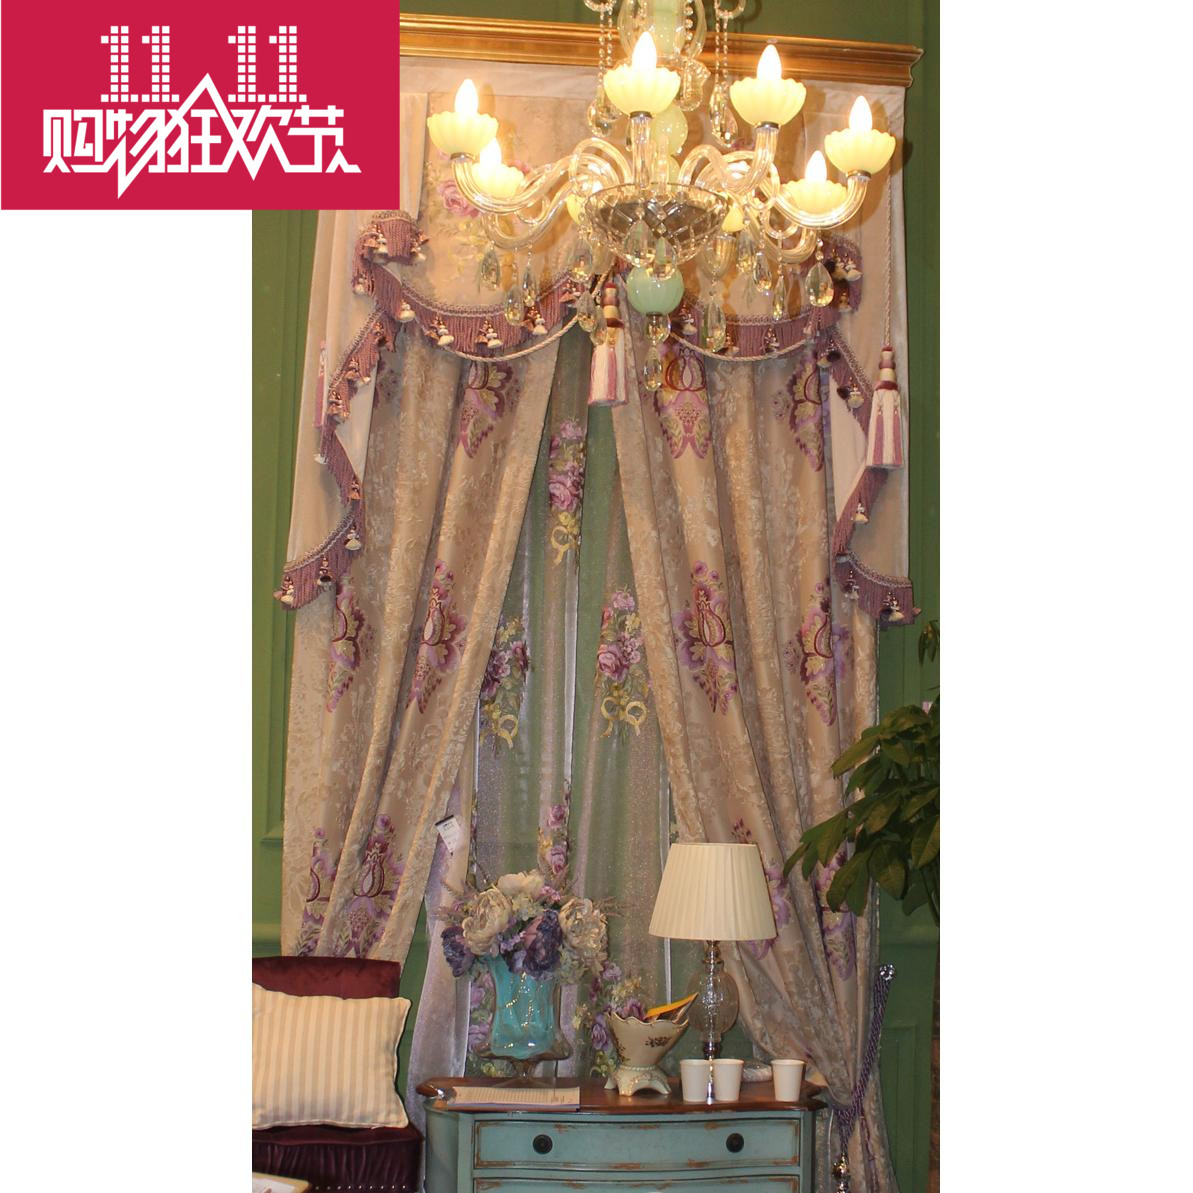 欧式进口绒布窗帘 贴布绣花客厅卧室紫色 绣花布料新品特卖新品